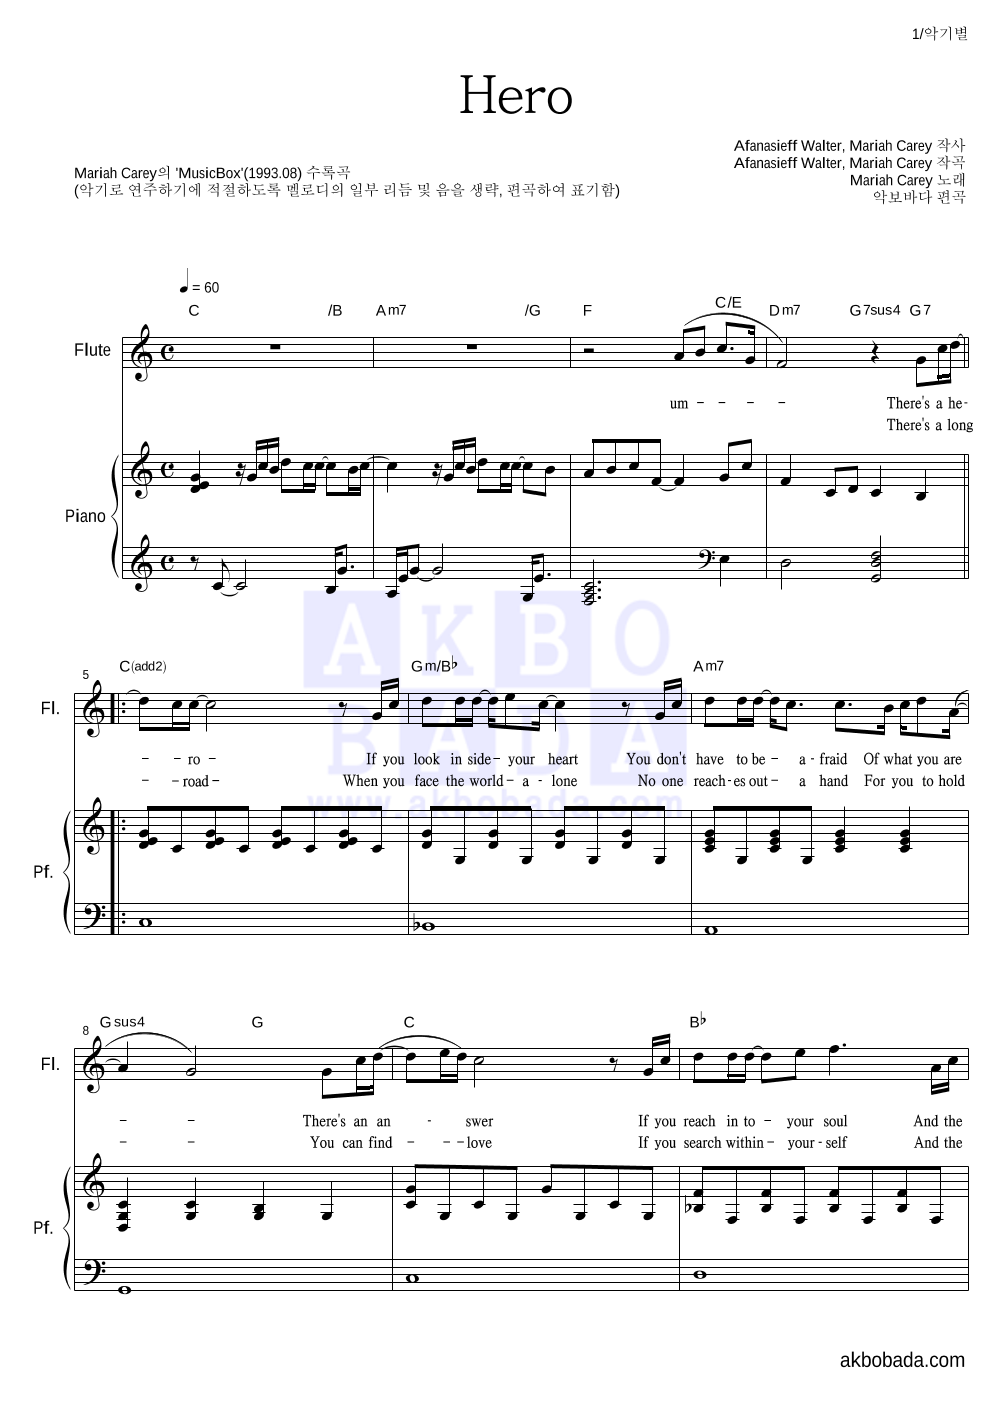 Mariah Carey - Hero 플룻&피아노 악보 